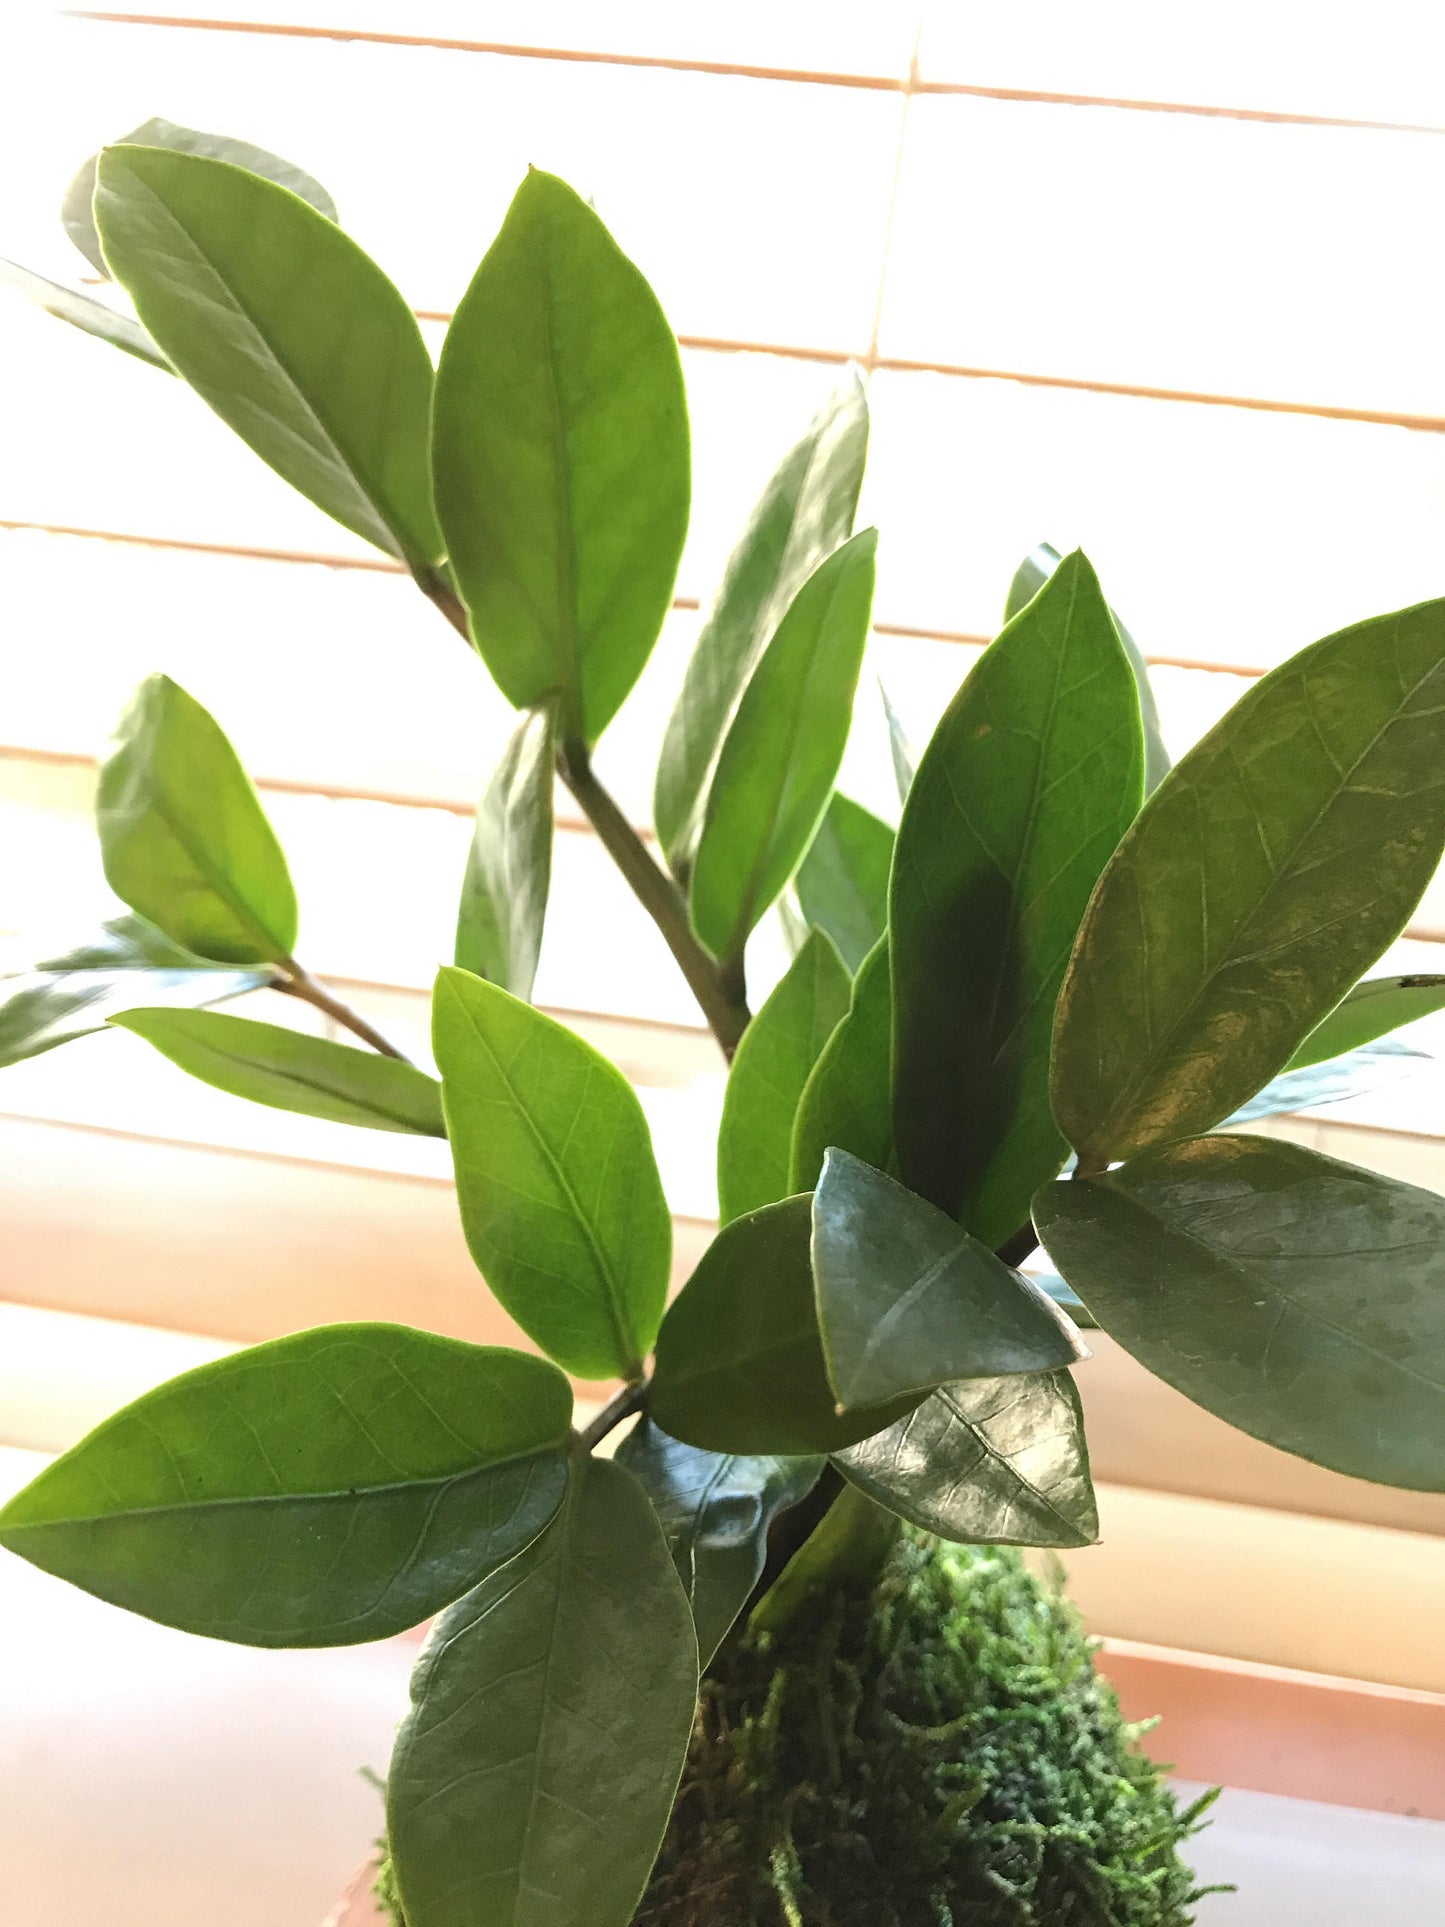 Zee Zee plant Kokedama - Moss ball, easy care, last long, hardy plant with shiny leaf!